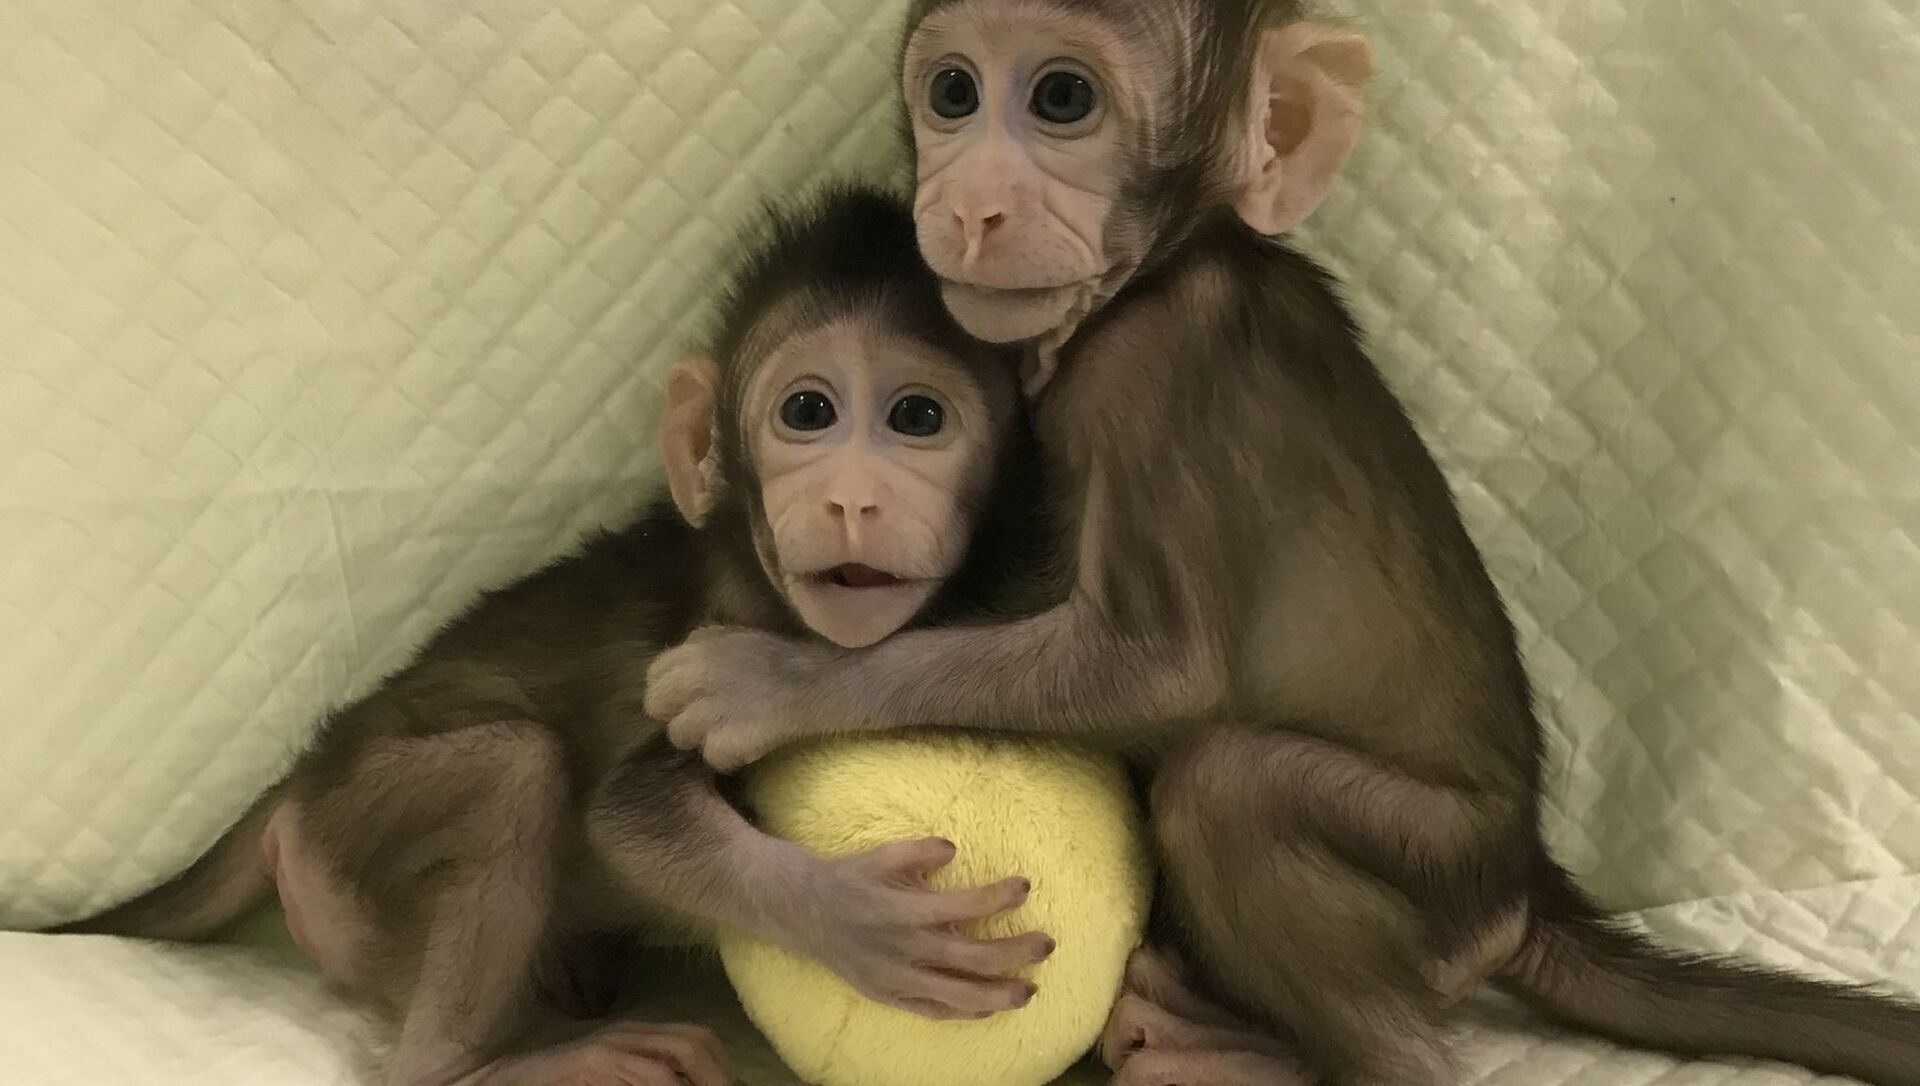 میمون ReTro، میمونی که با موفقیت در چین شبیه‌سازی شده و ۲ سال است که زنده مانده (یک پزشک)